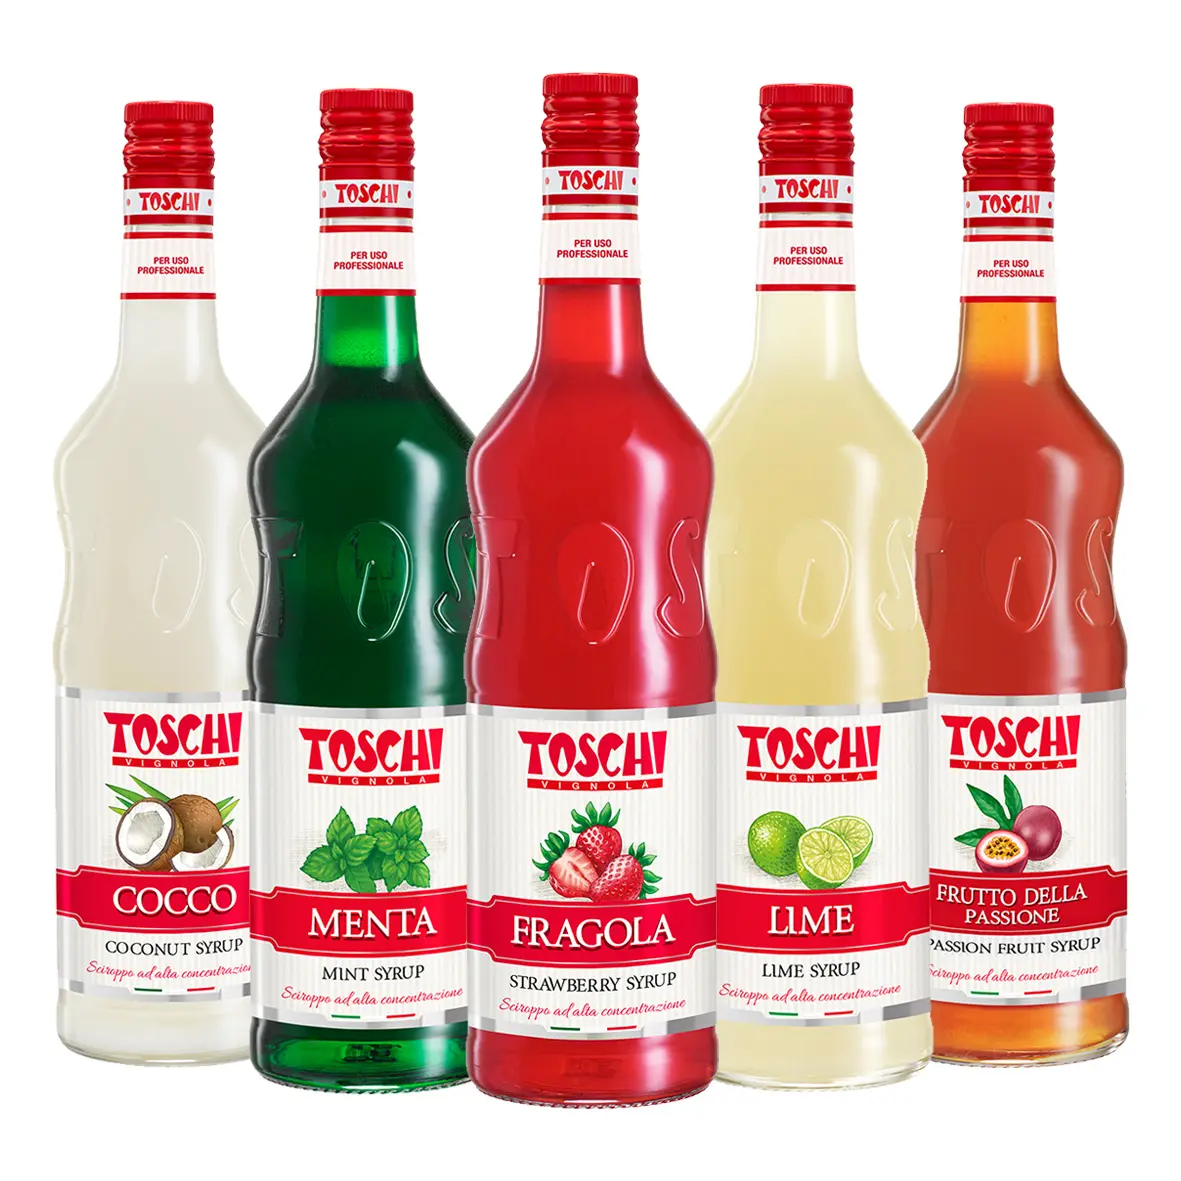 1 لتر 1,32 كجم المصنوعة في إيطاليا Toschi تتركز شراب الفاكهة للشرب ، كوكتيل و slushes